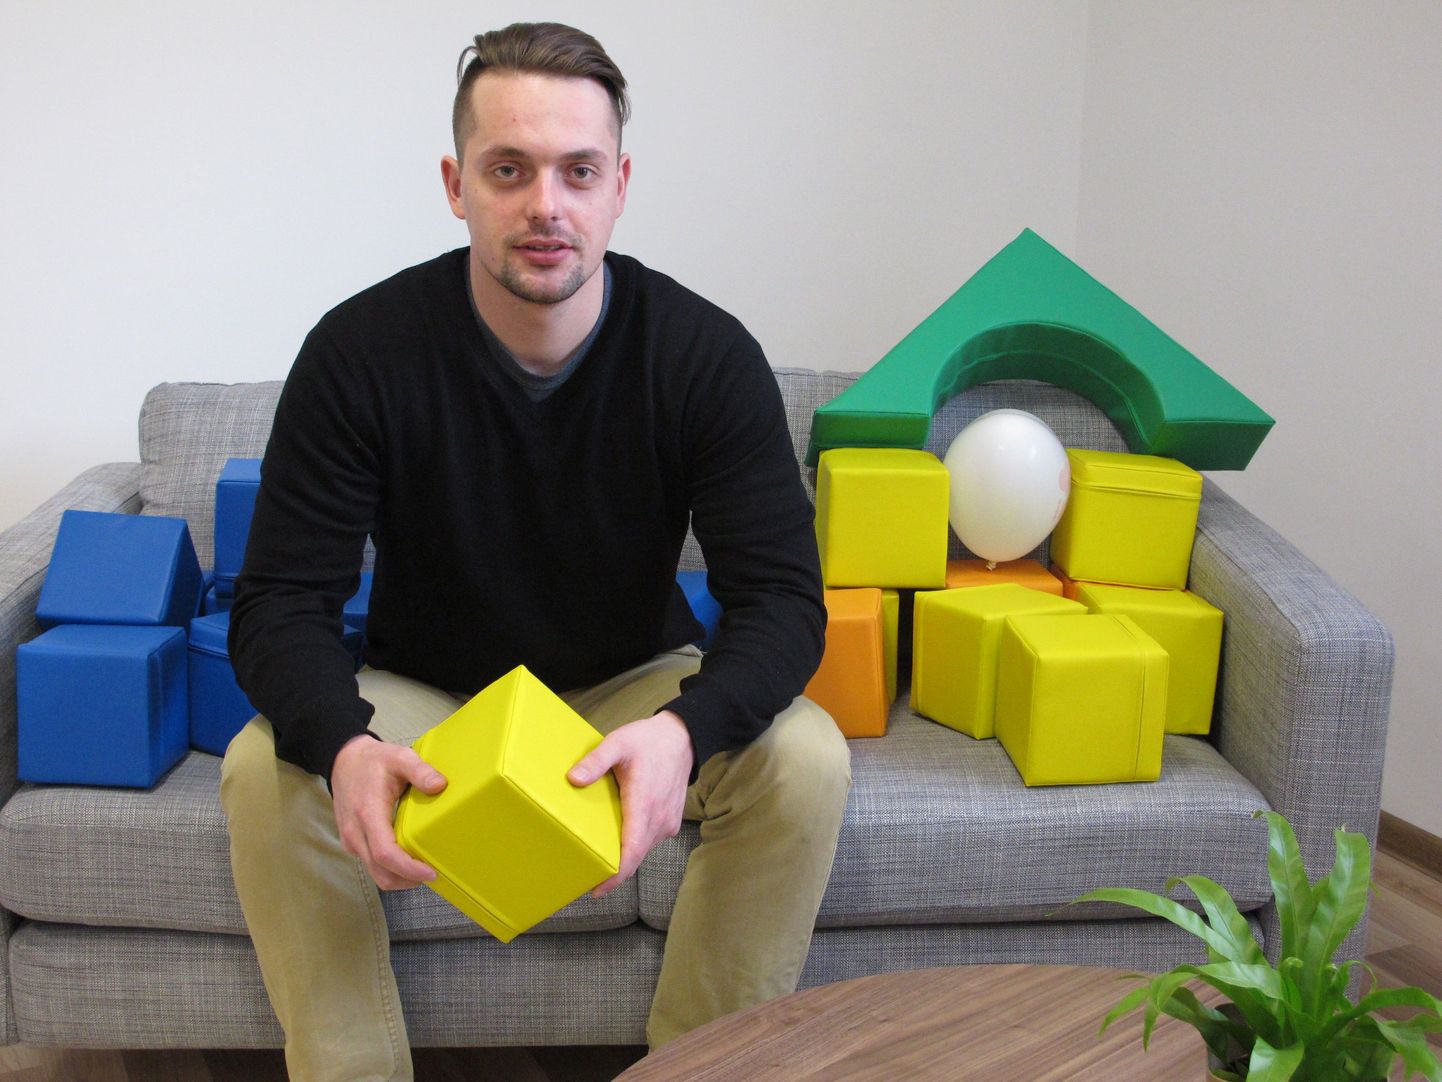 Ettevõtte Pepi Rer projektijuht Kristaps Orskis enda loodud mänguasjadega.